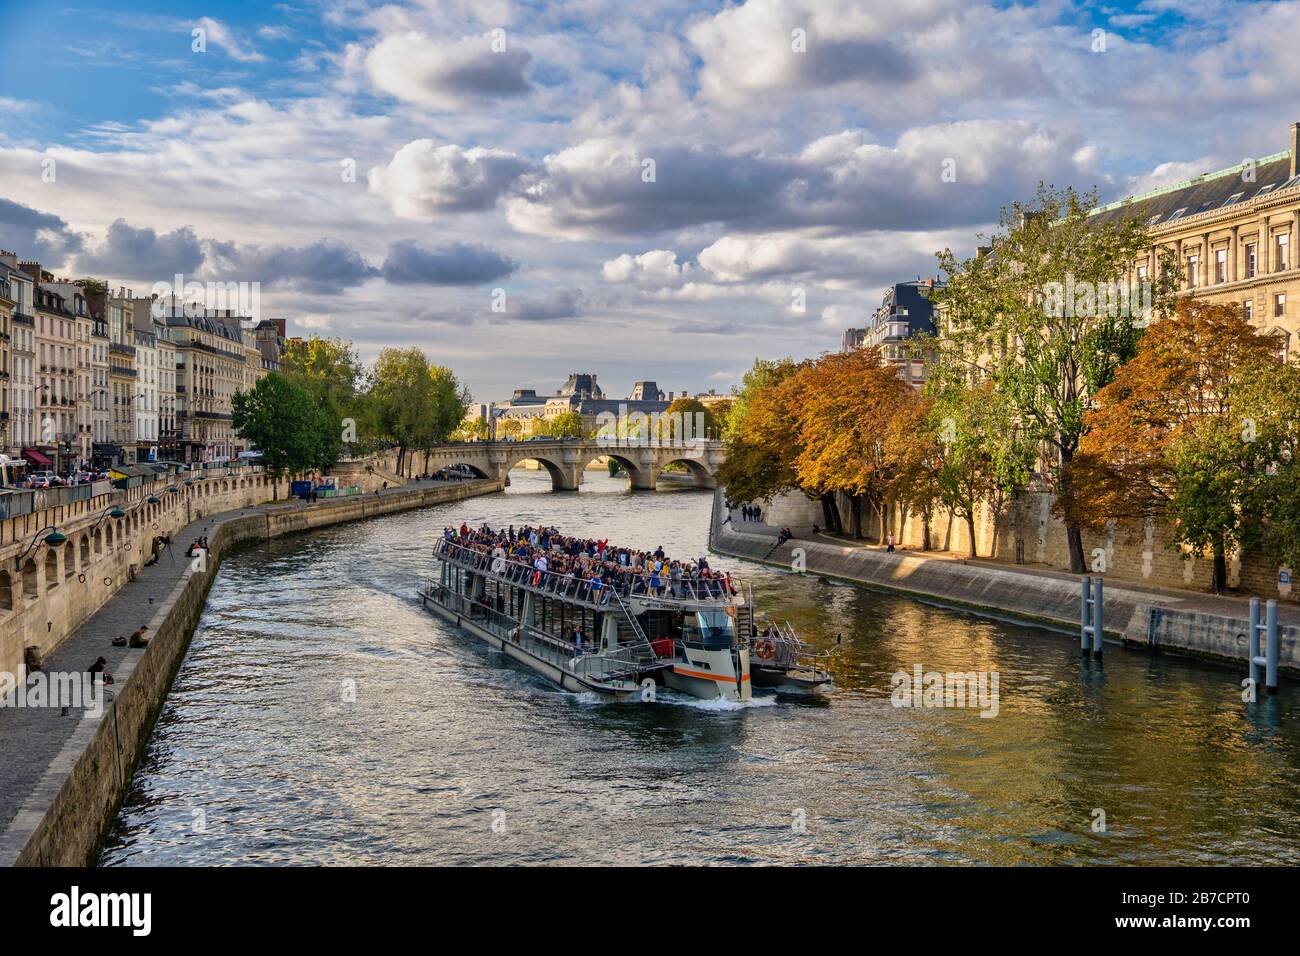 Bateau-bouche bateau traditionnel parisien naviguant sur la Seine à Paris, France, Europe Banque D'Images